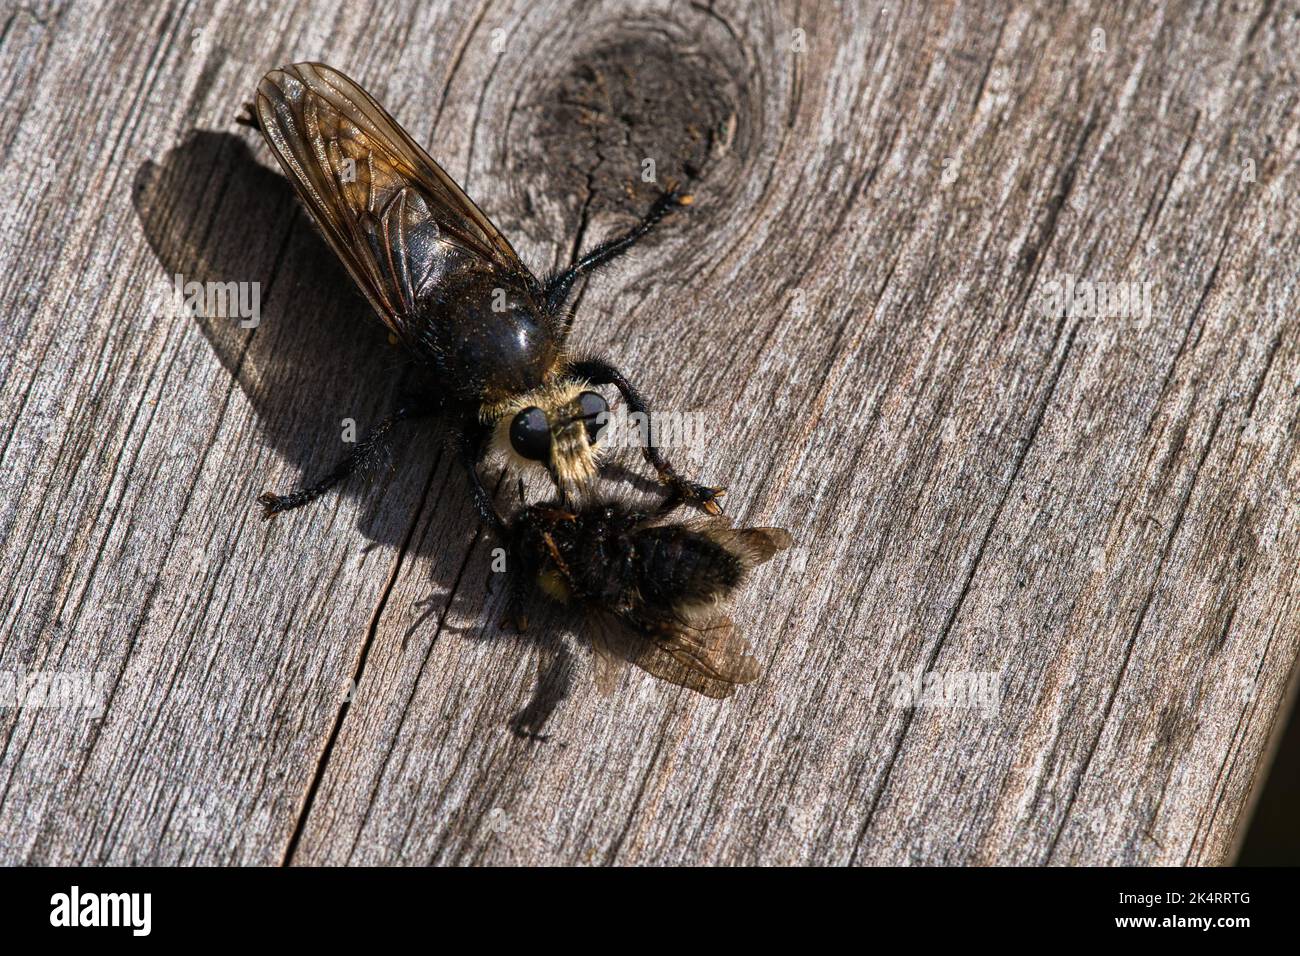 Mosca gialla dell'omicidio o mosca gialla del ladro con un bumblebee come preda. L'insetto viene risucchiato dal cacciatore. I peli neri gialli coprono il cacciatore. Sh. Macro Foto Stock